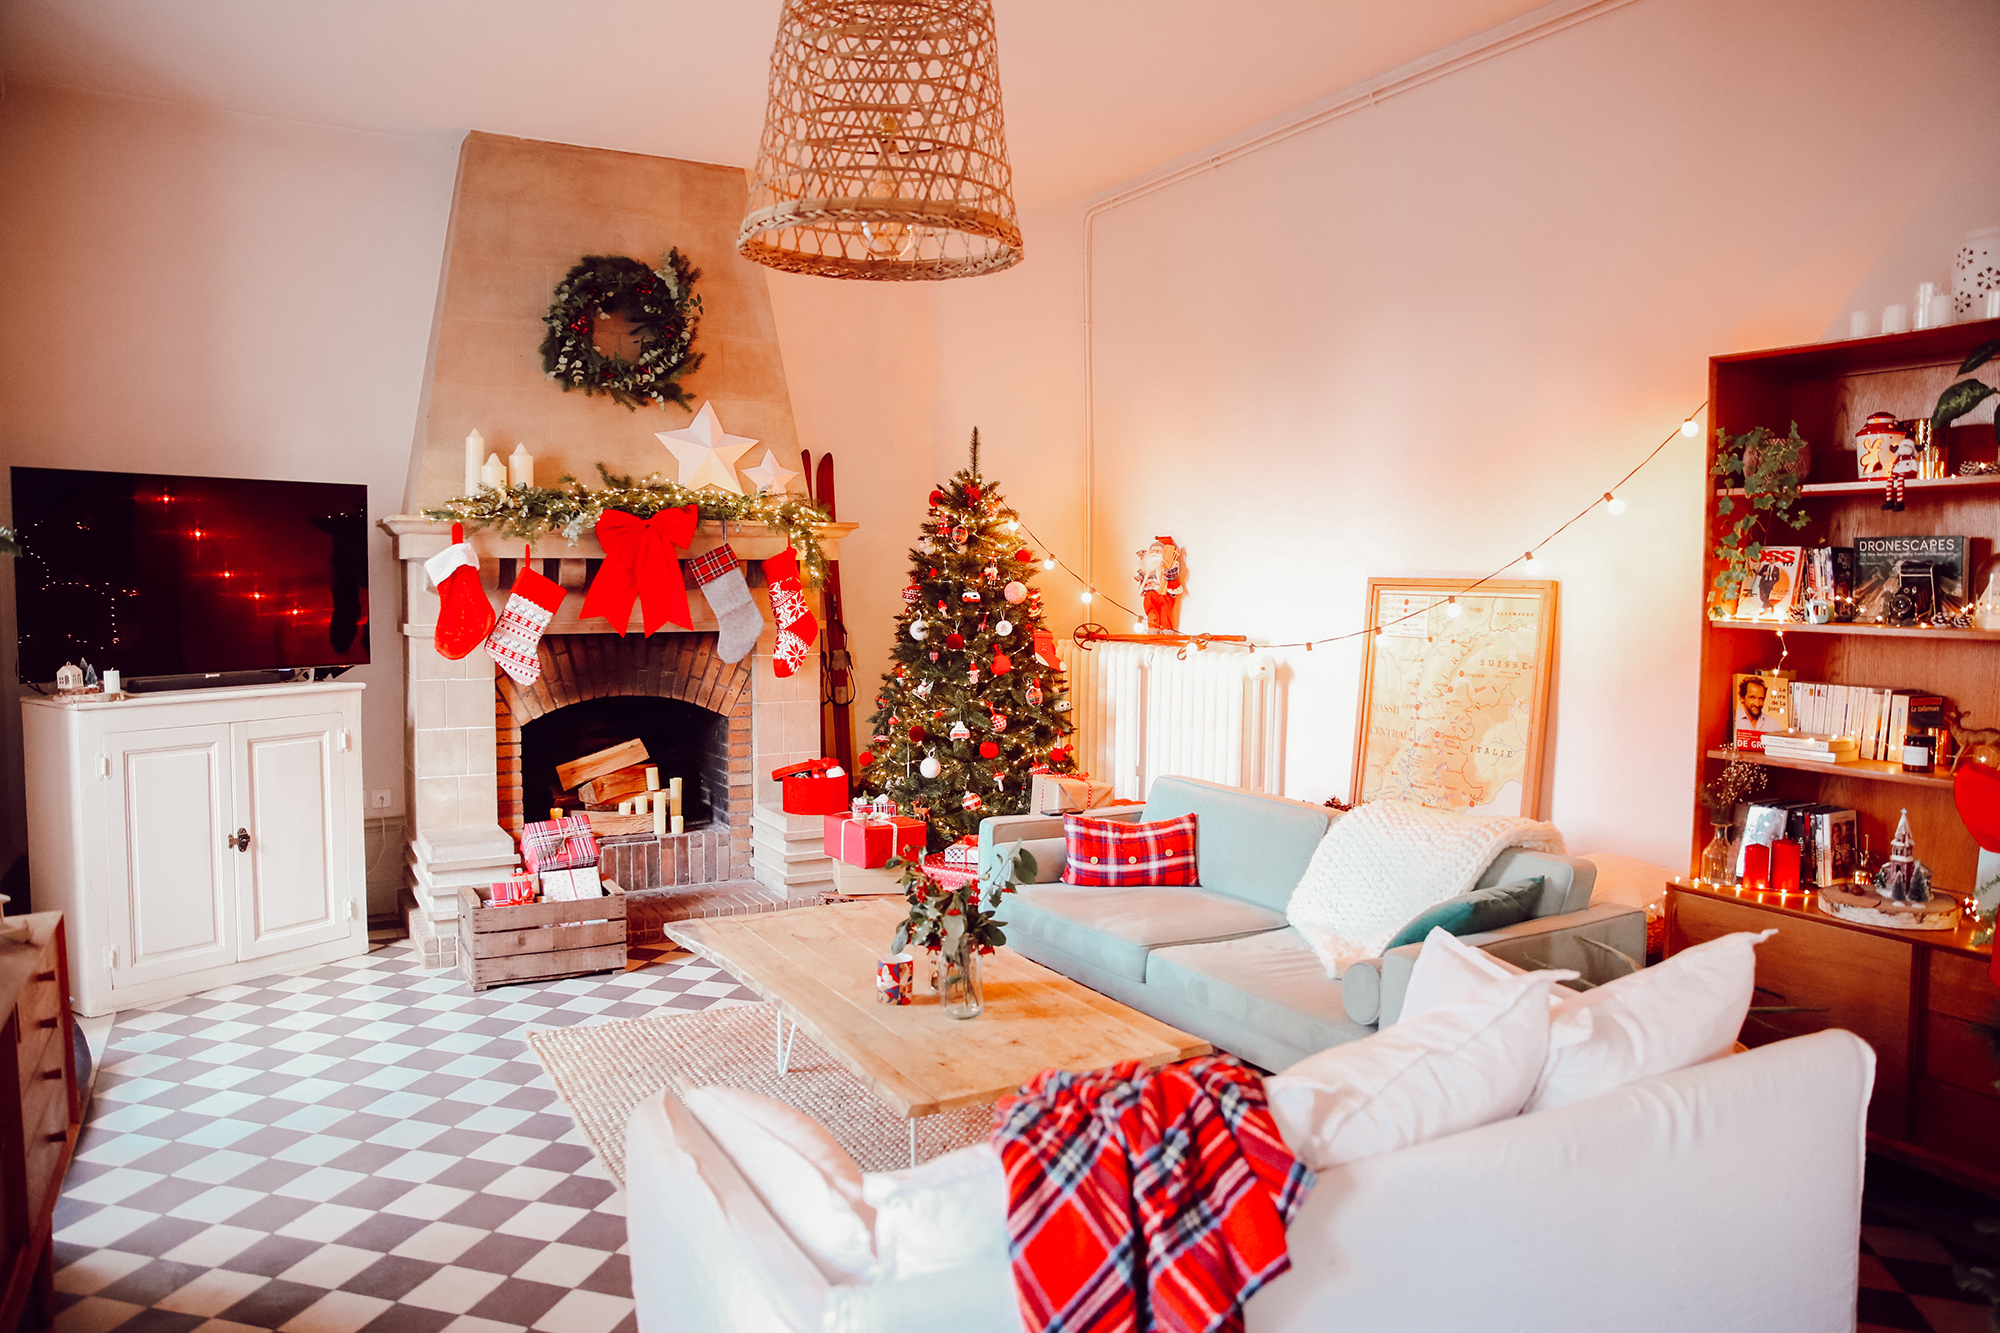 40 idées pour bien décorer le devant de sa maison pour Noël - Jardiland